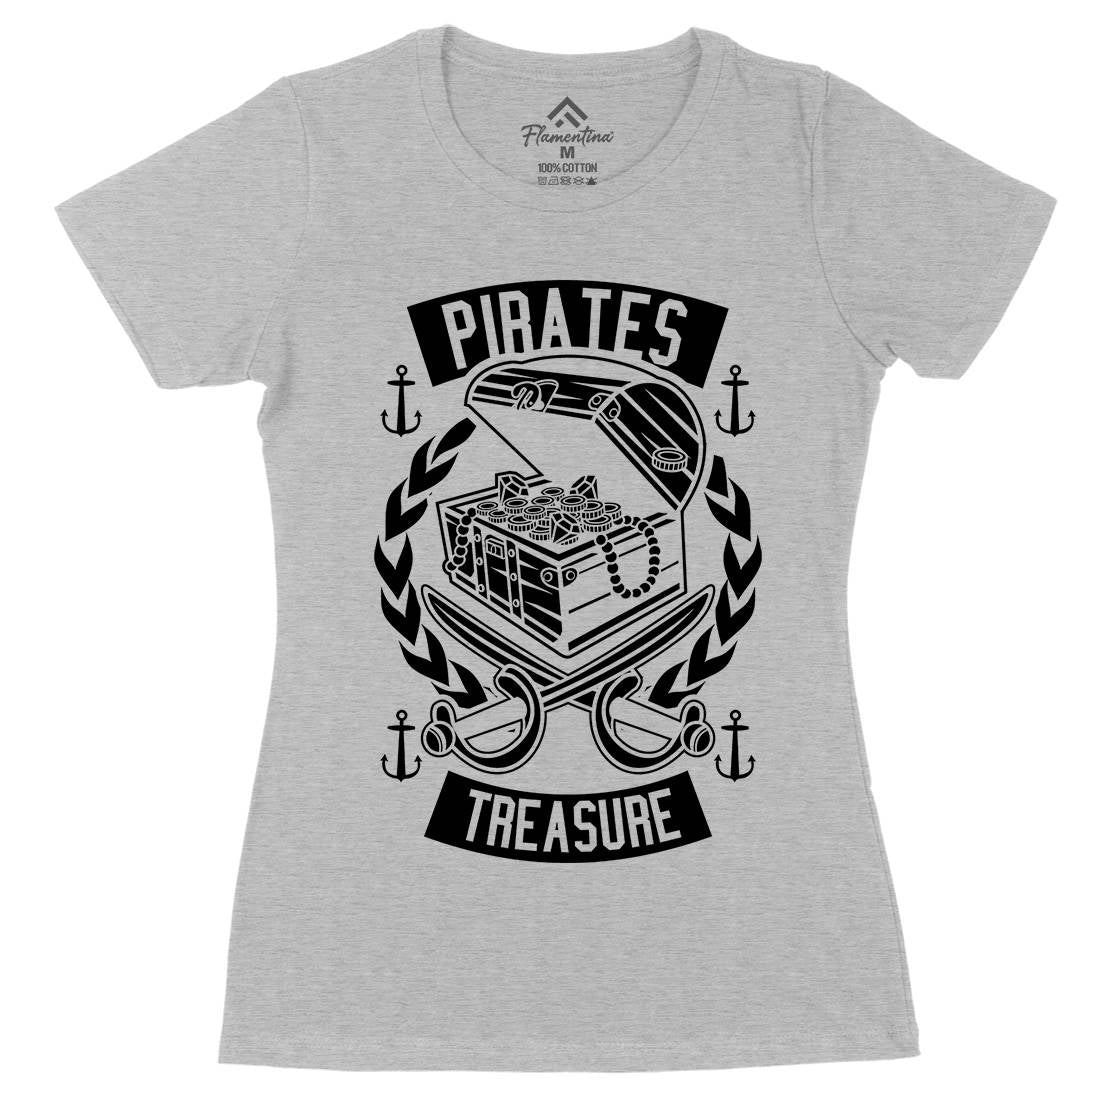 Pirates Treasure Womens Organic Crew Neck T-Shirt Navy B600